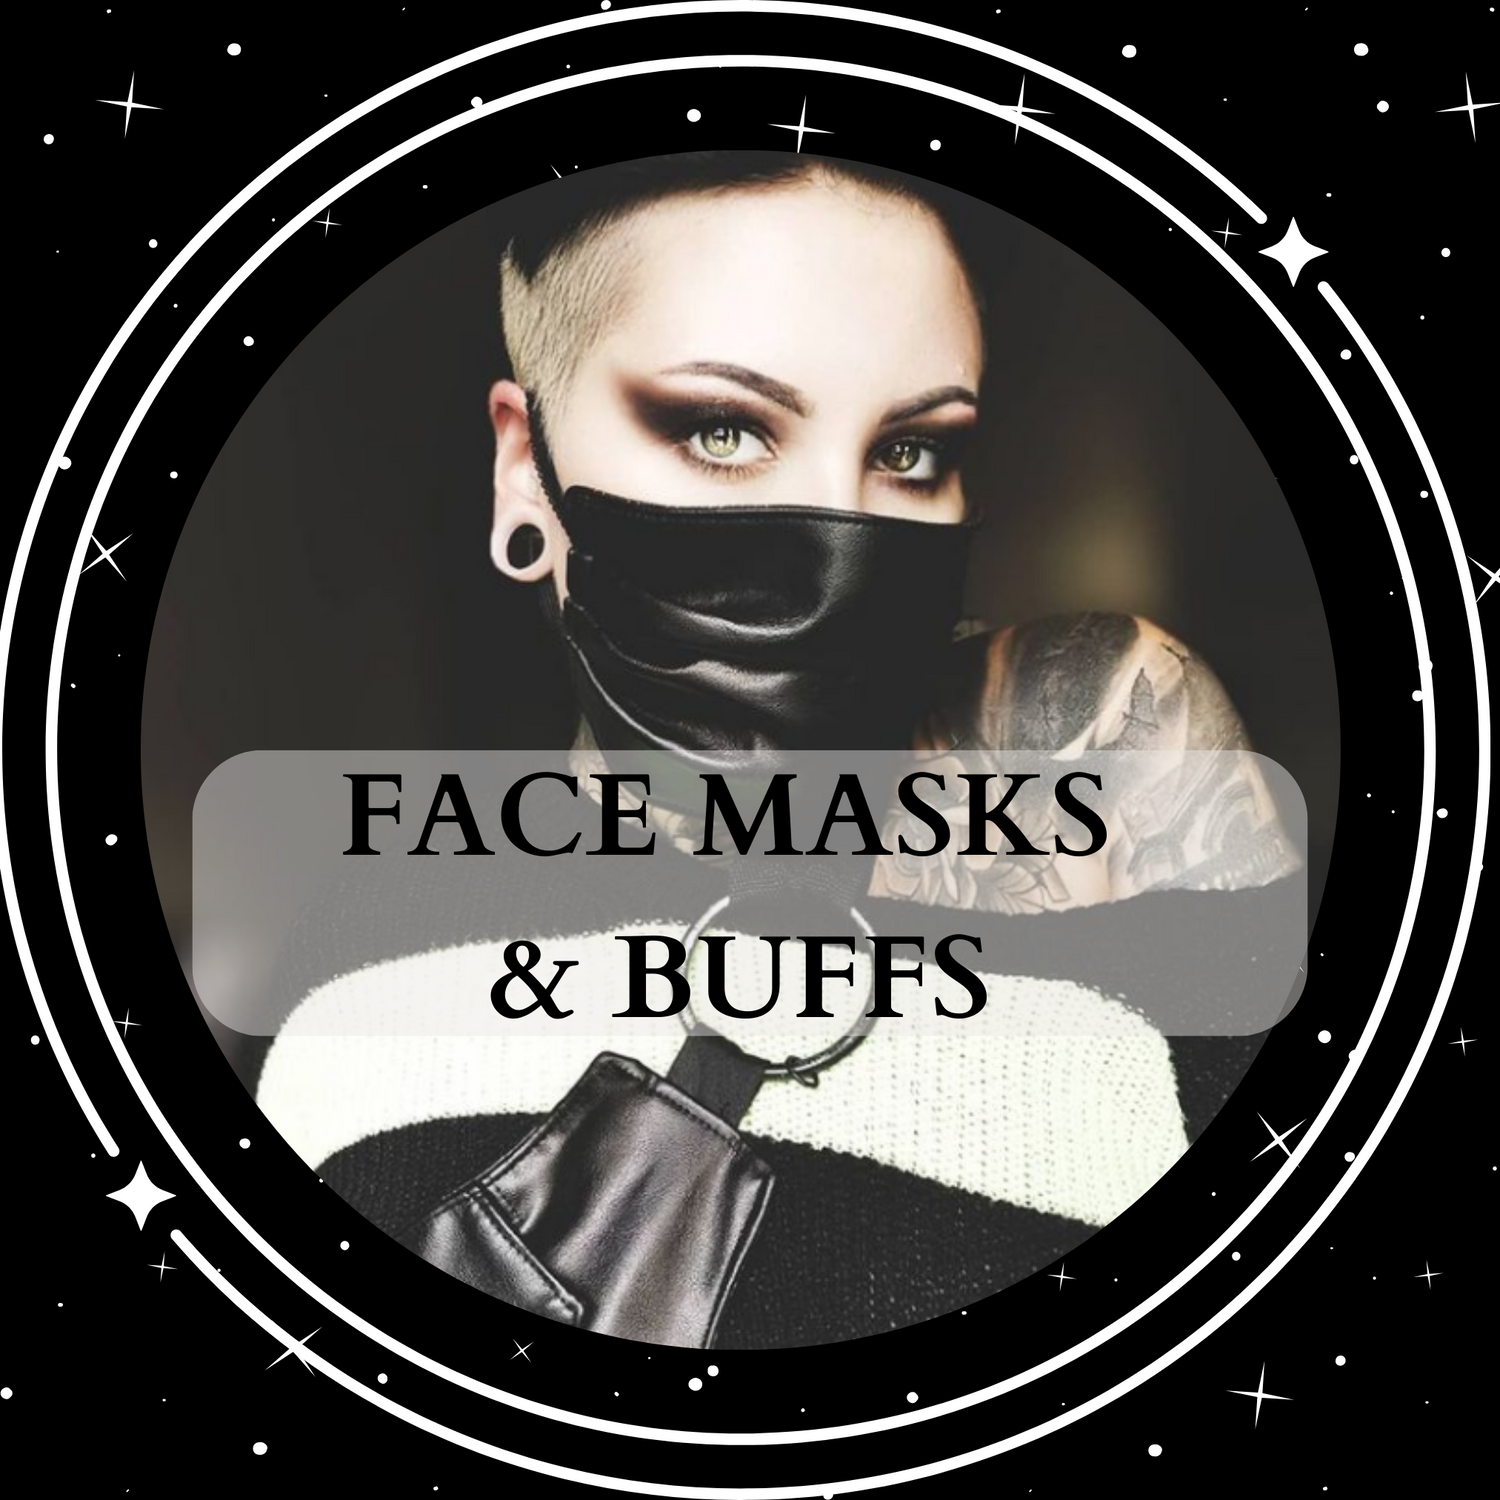 Face Masks & Buffs